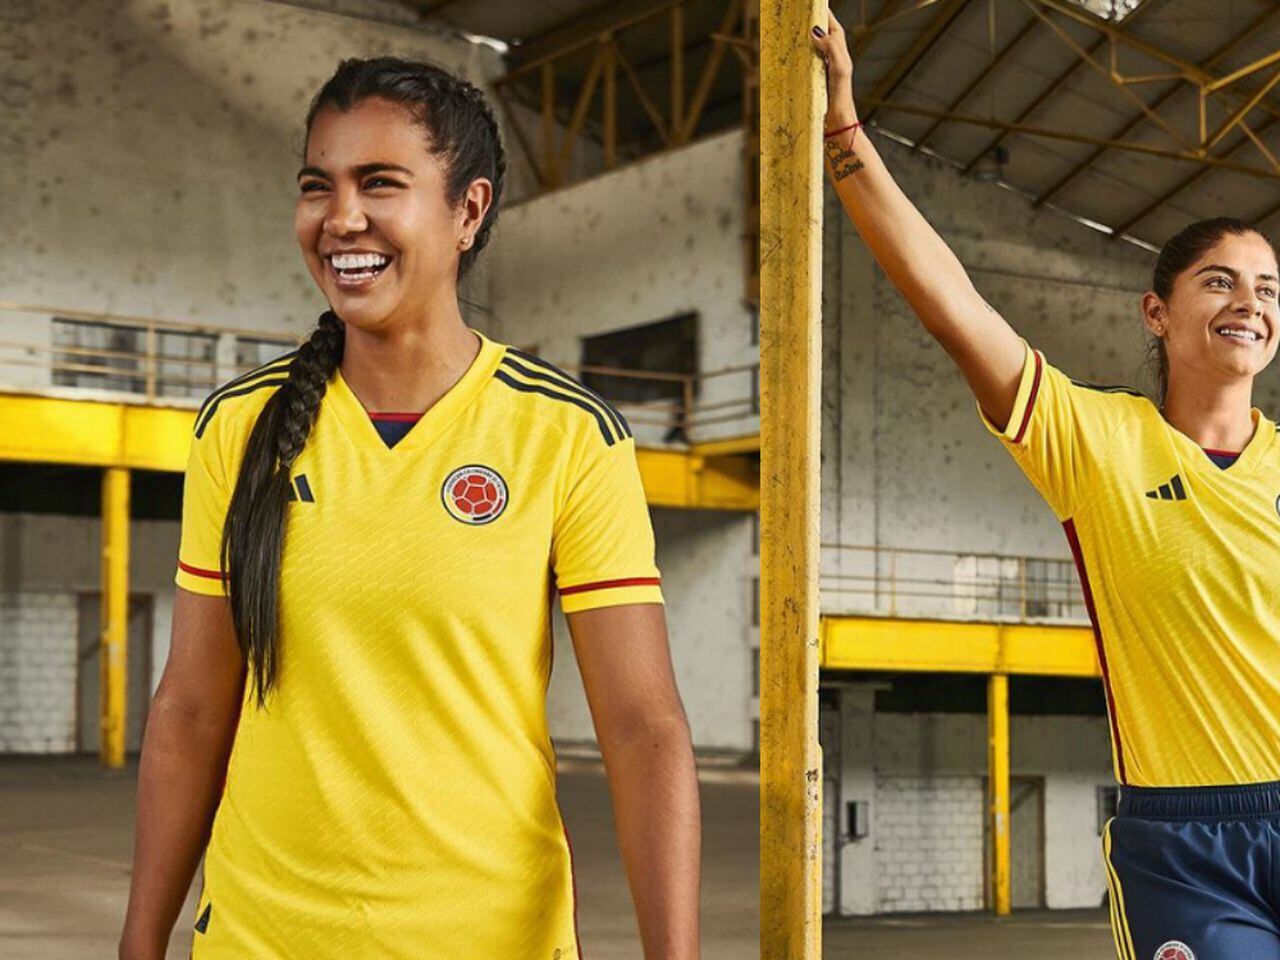 Camiseta Amarilla – Uniformes OG. Cali Colombia.